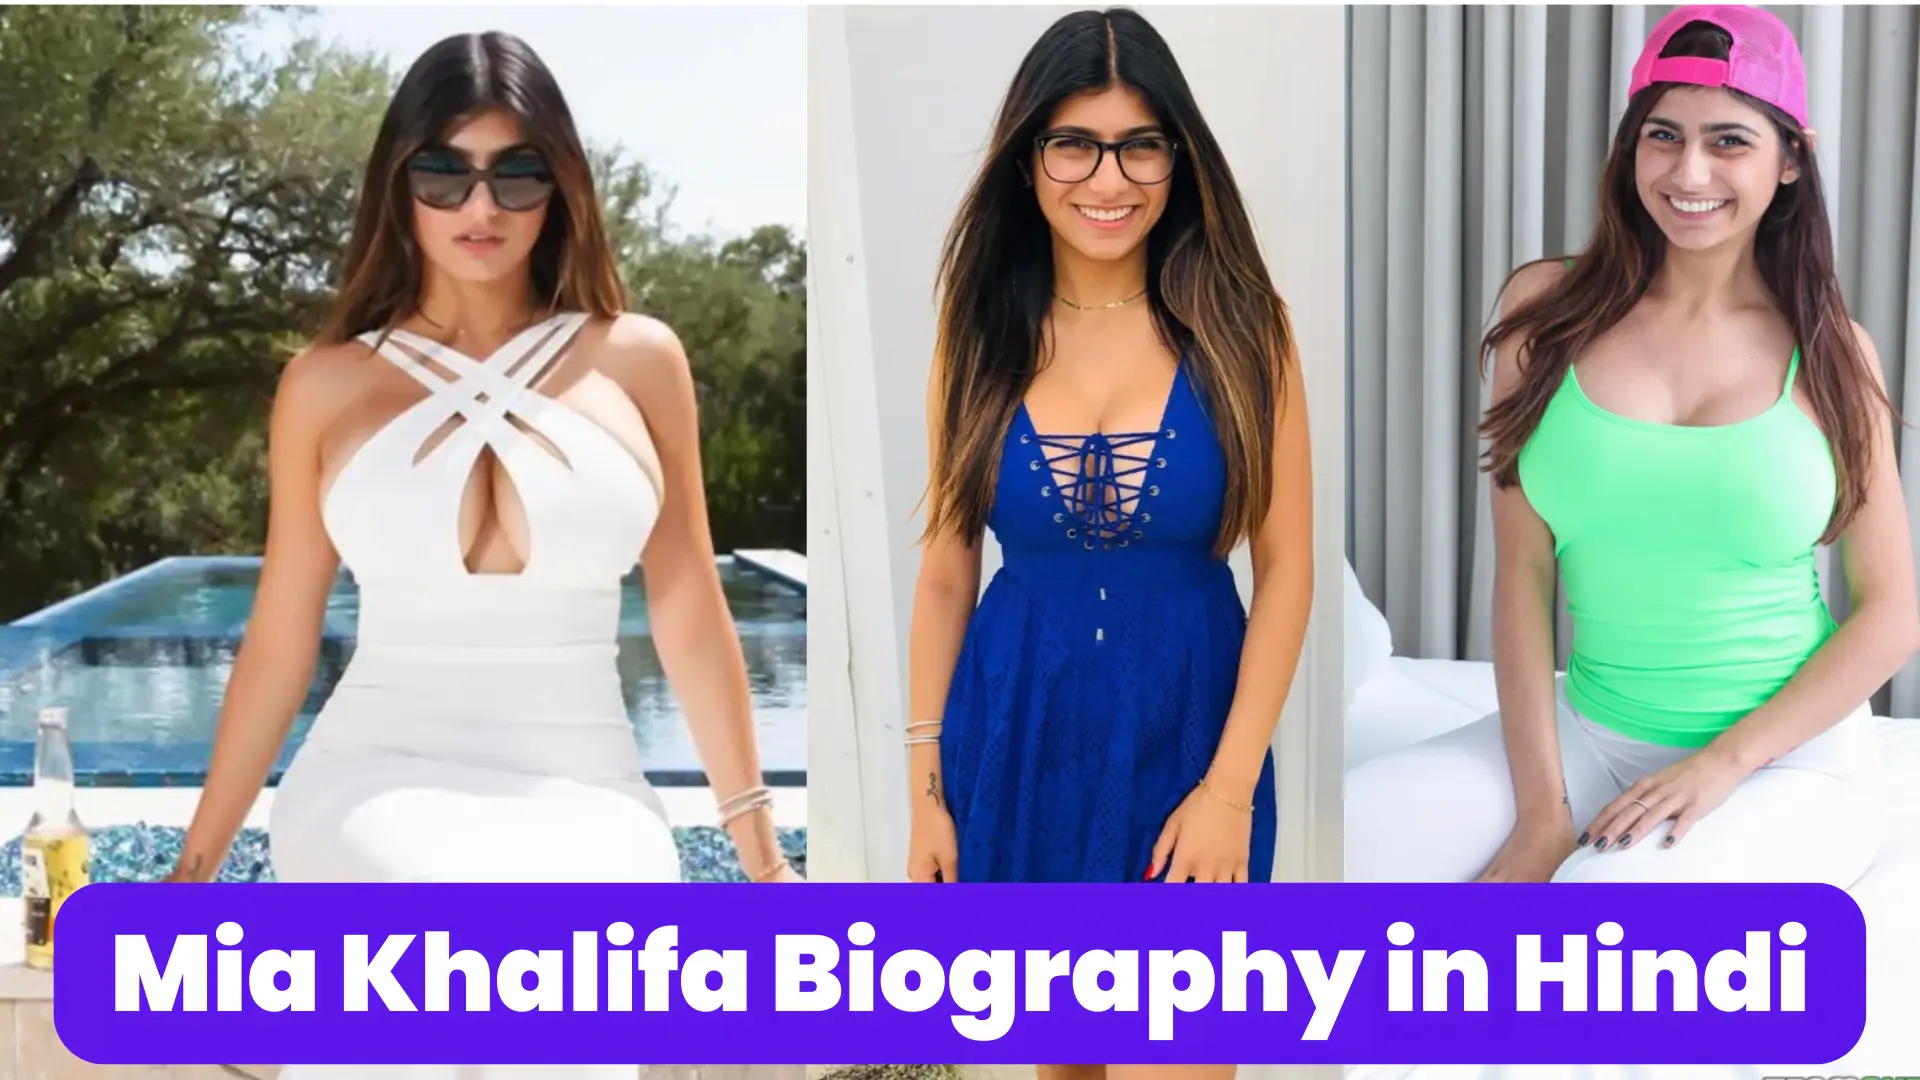 Mia Khalifa Social Media Post | Mia Khalifa Social Media News